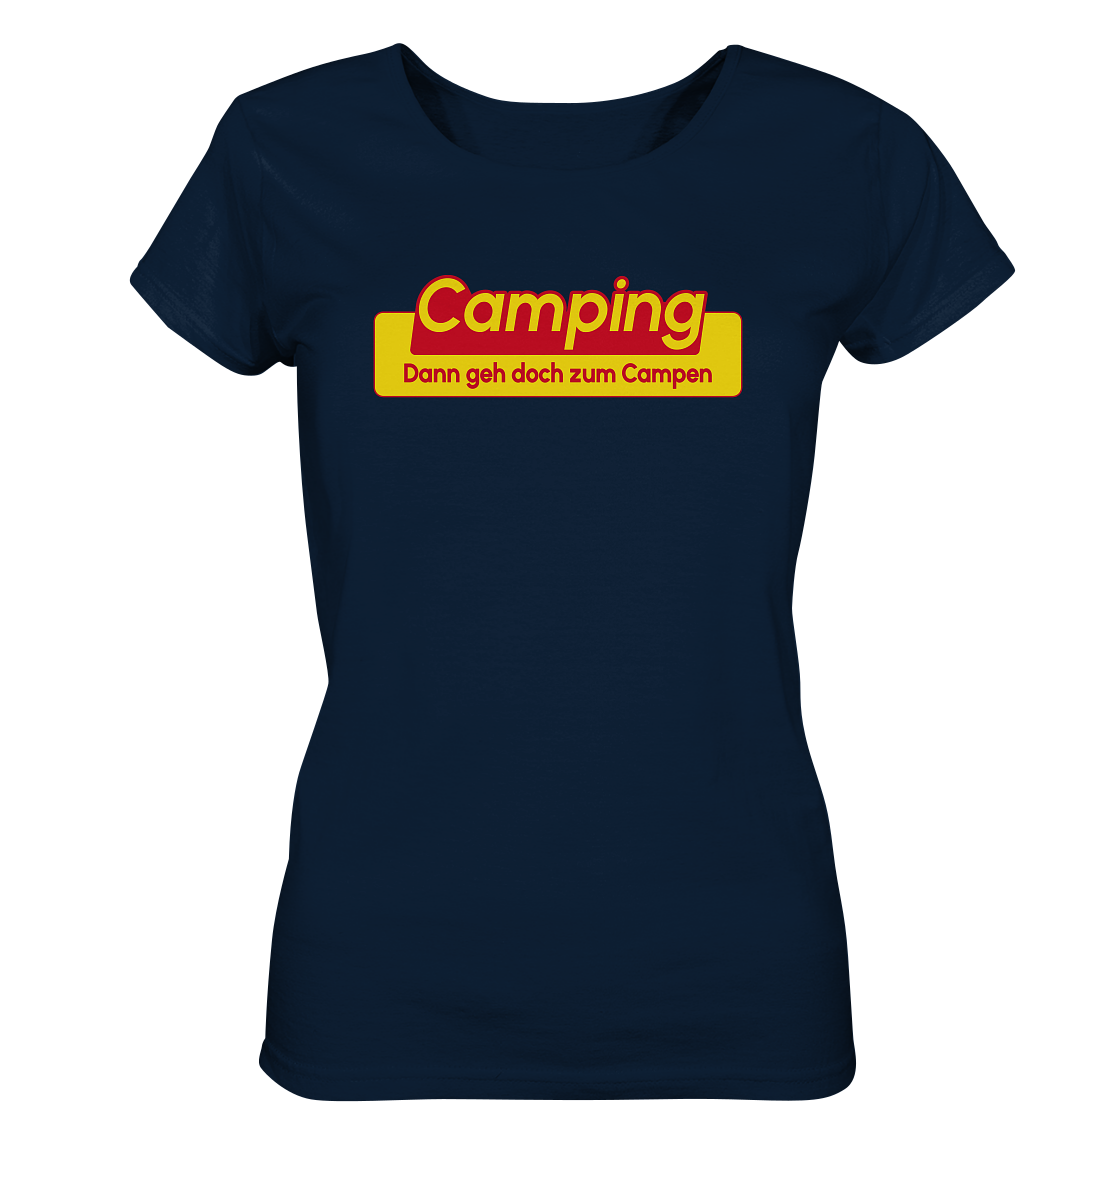 Dann geh doch zum Campen! - Ladies Organic Shirt